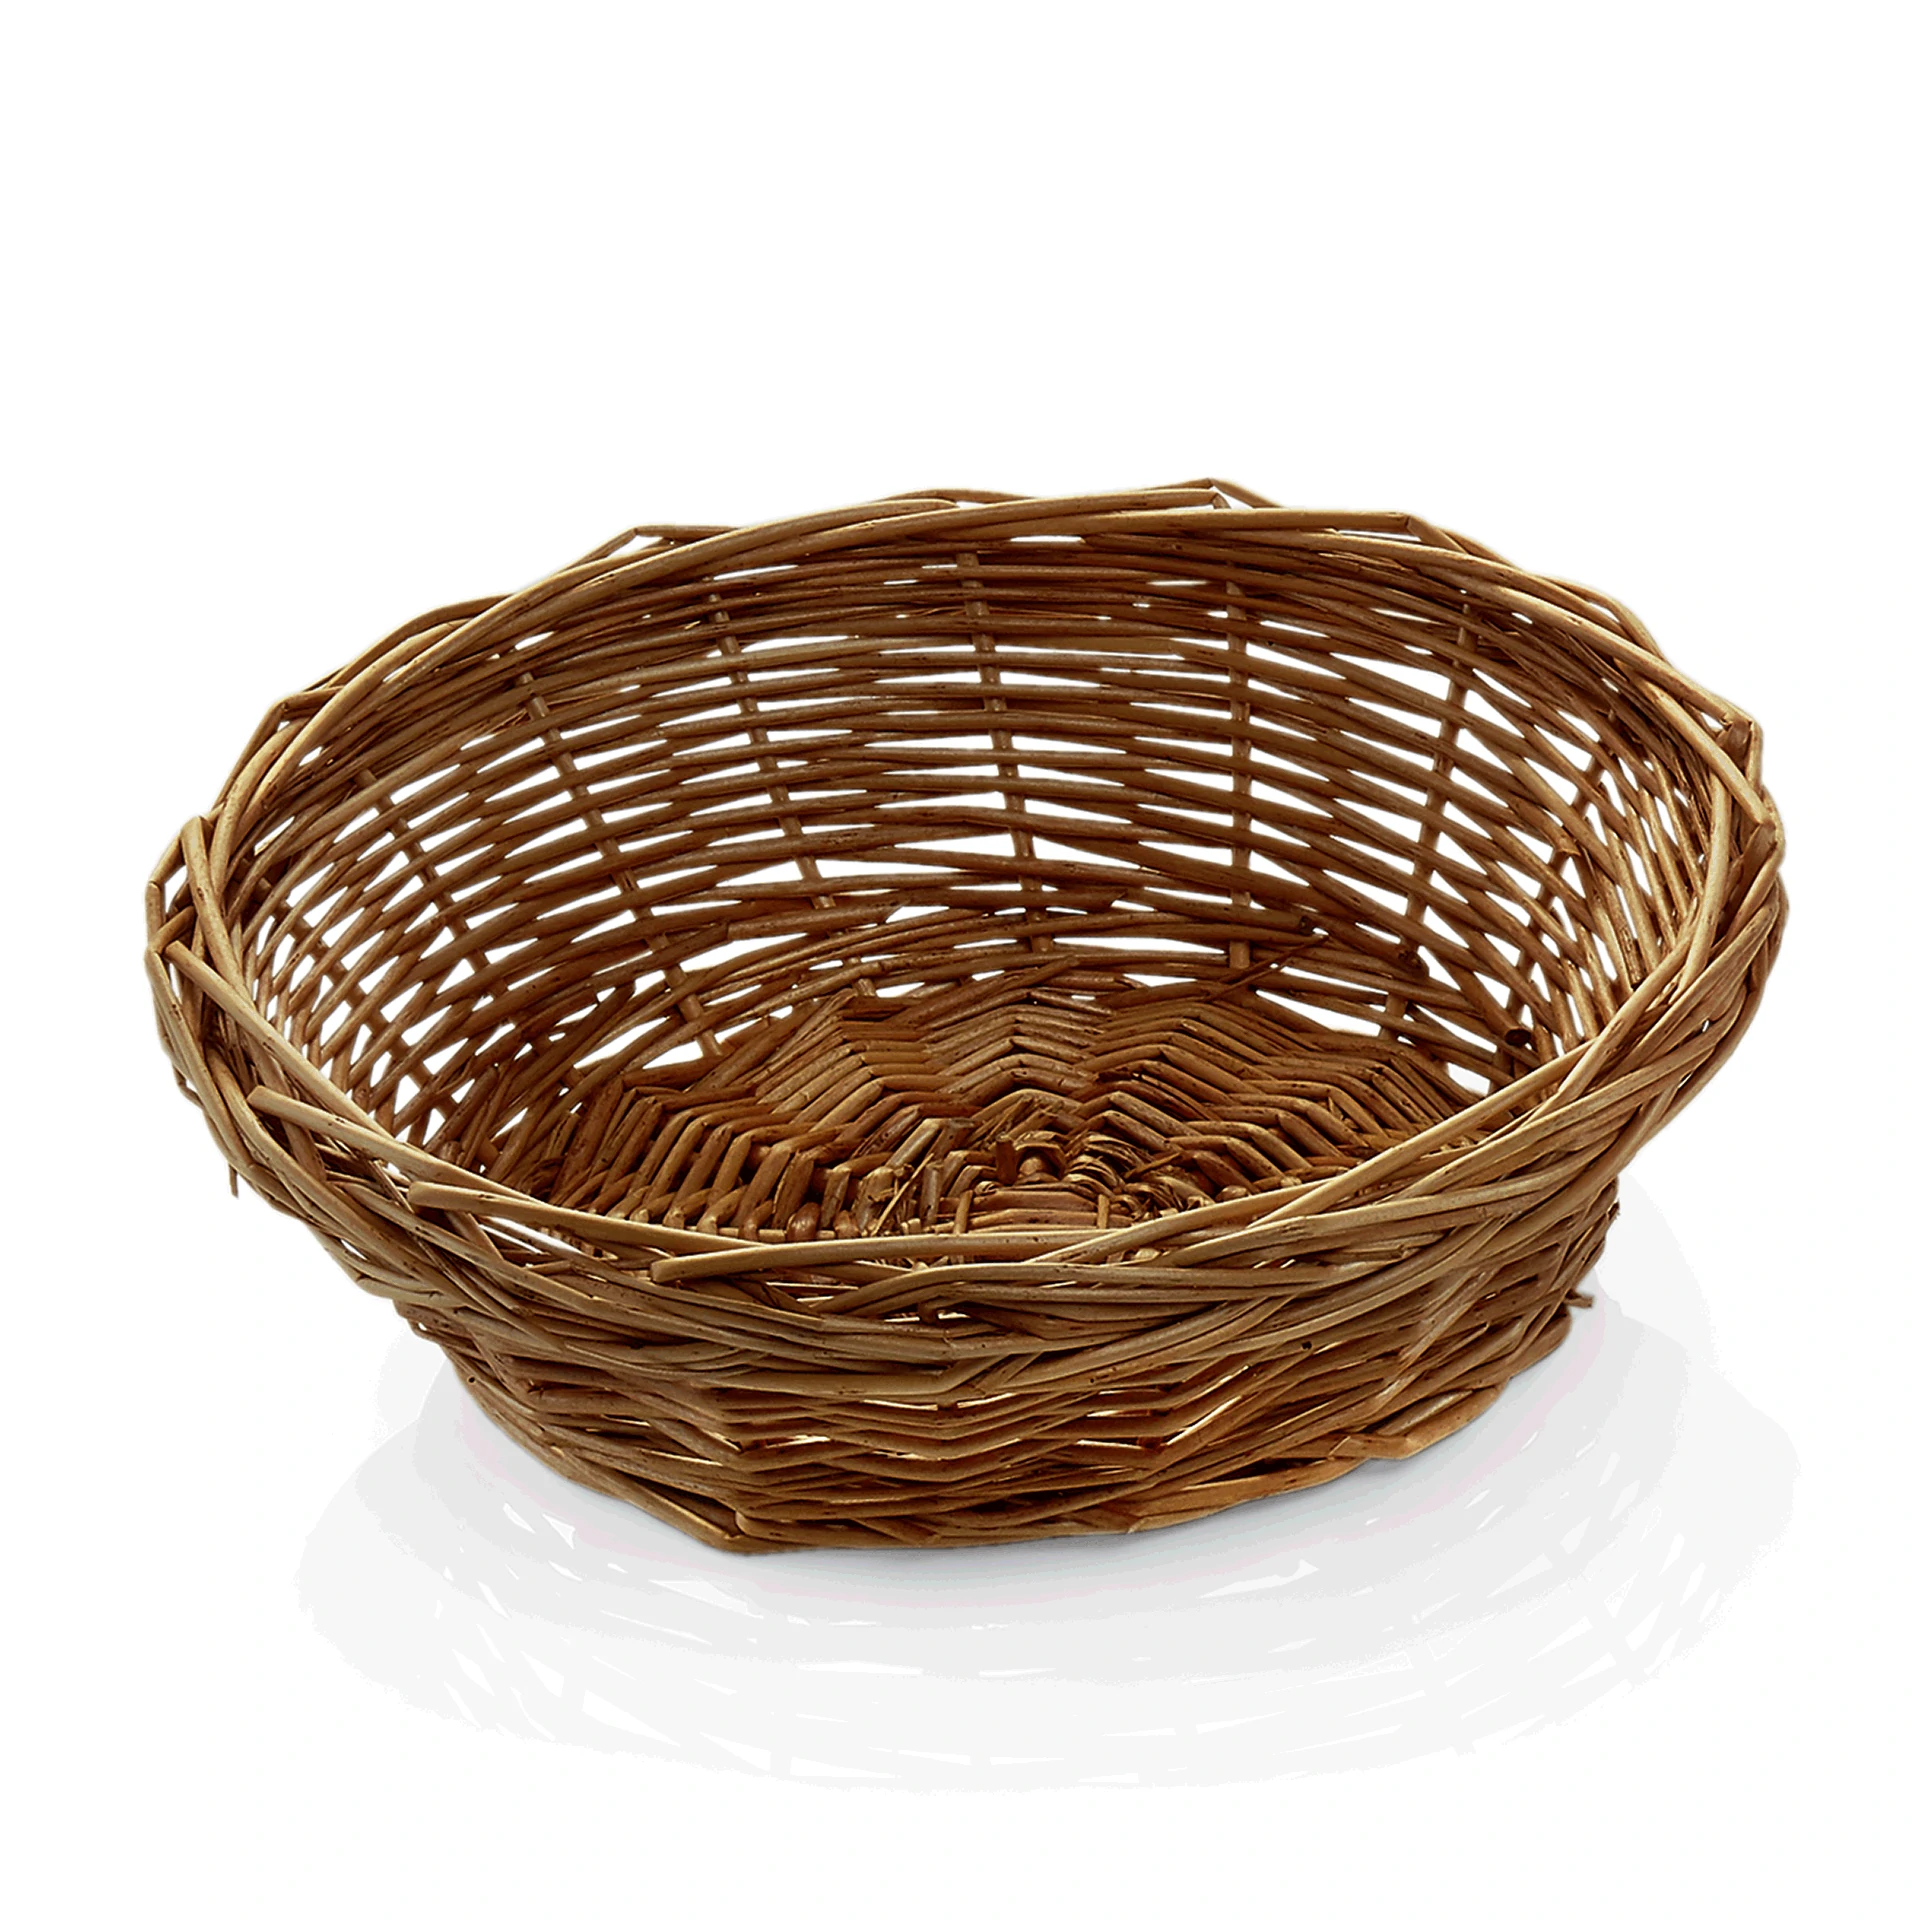 Basket 3136